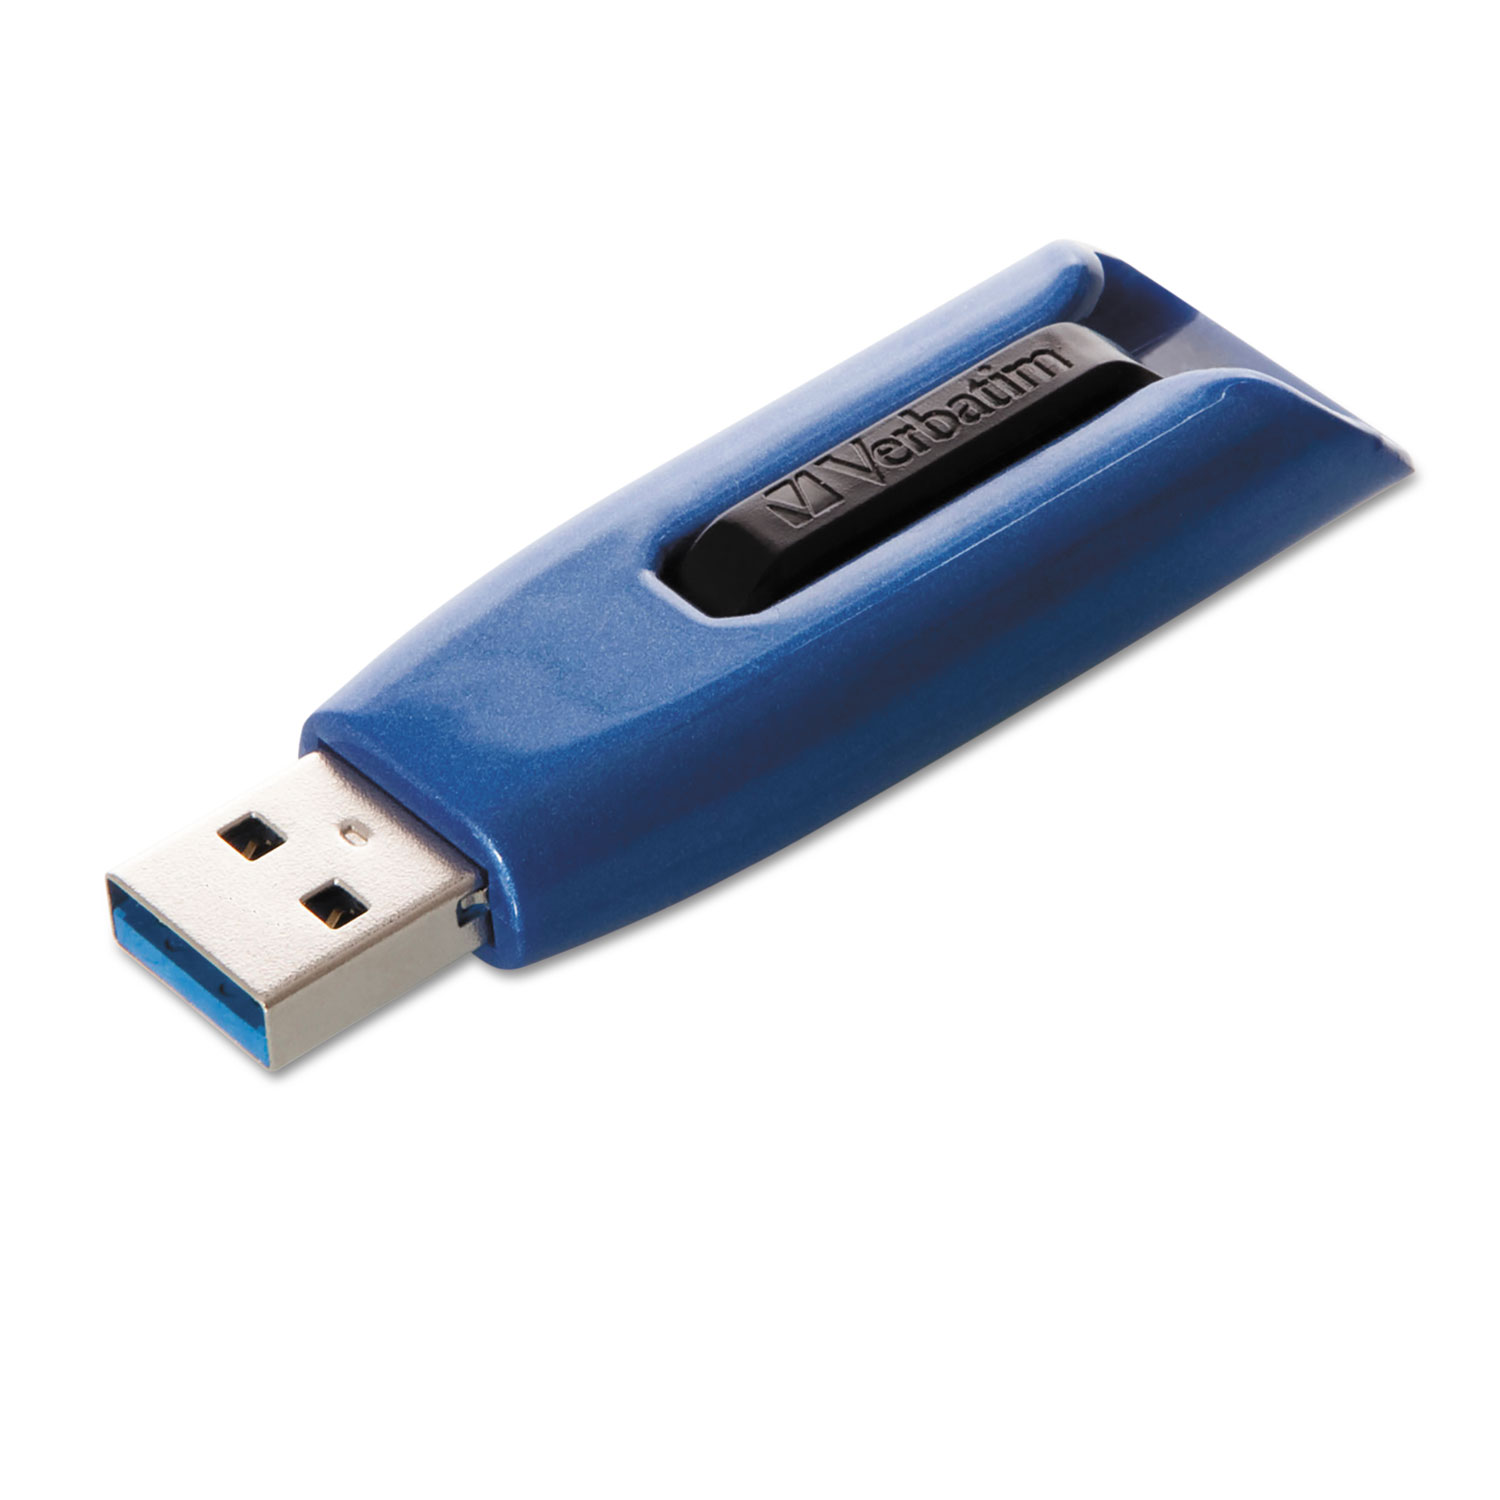 V3 Max USB 3.0 Drive, 64GB, Blue